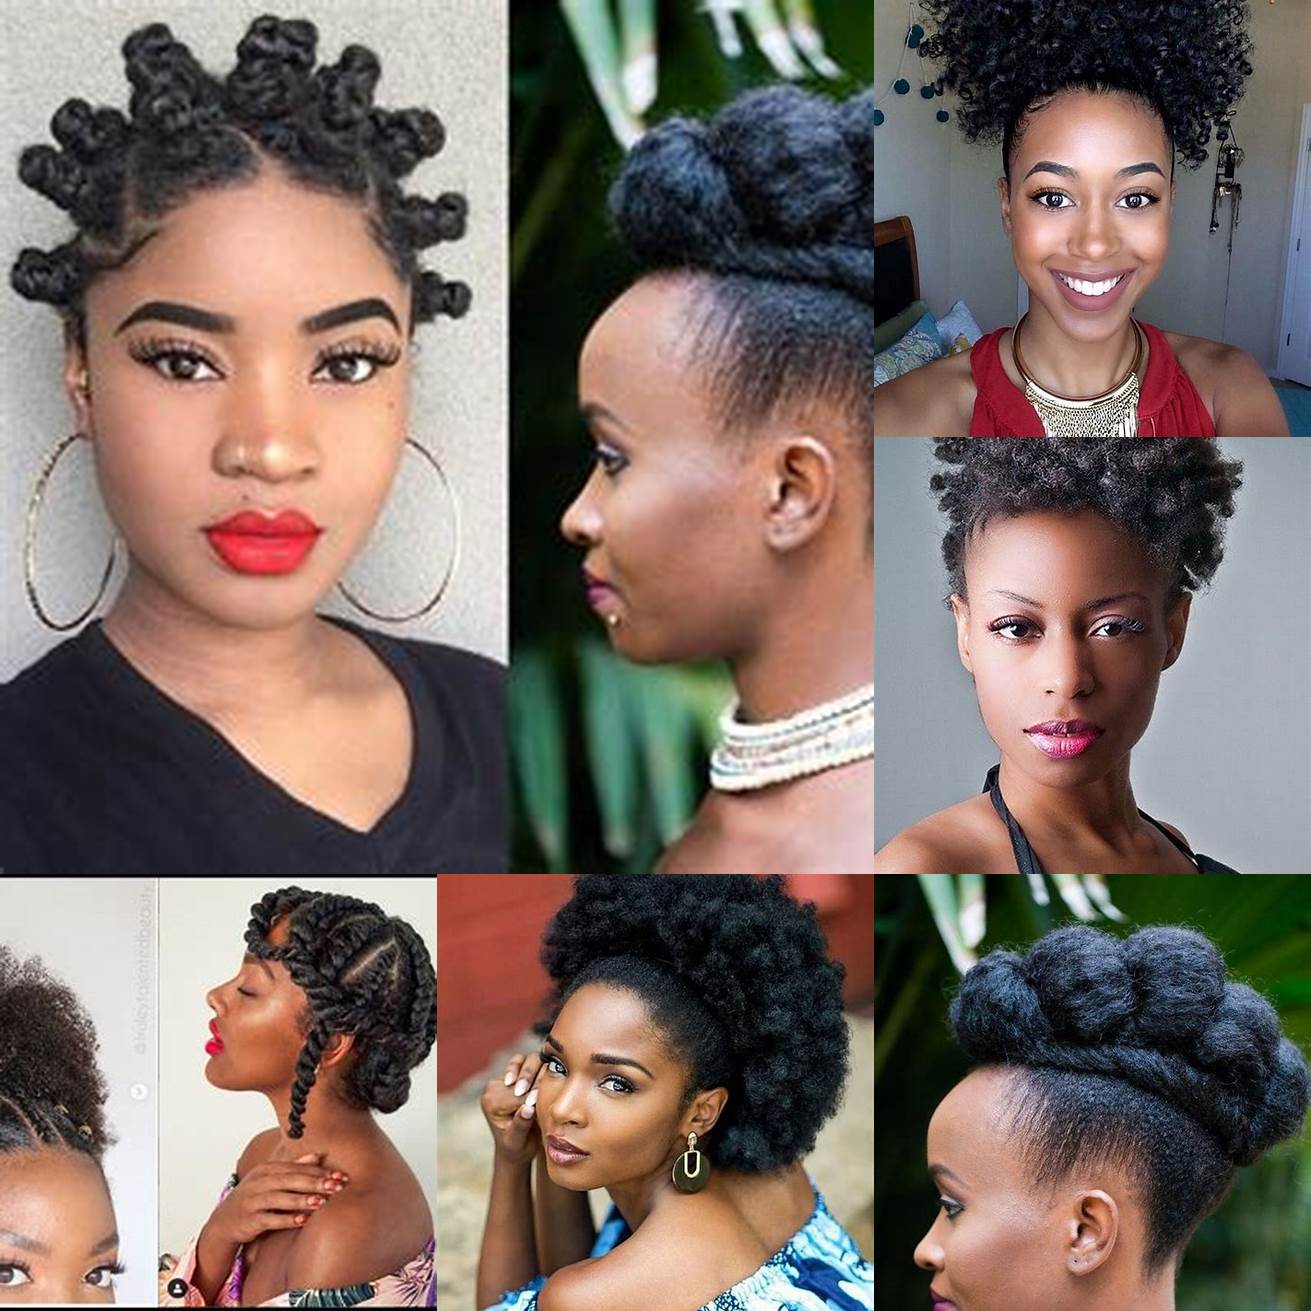 Afro puff cette coiffure consiste à rassembler les cheveux afro naturels en un chignon haut sur la tête Lafro puff peut être réalisé avec ou sans accessoires et peut être agrémenté de mèches de couleurs pour un effet plus original